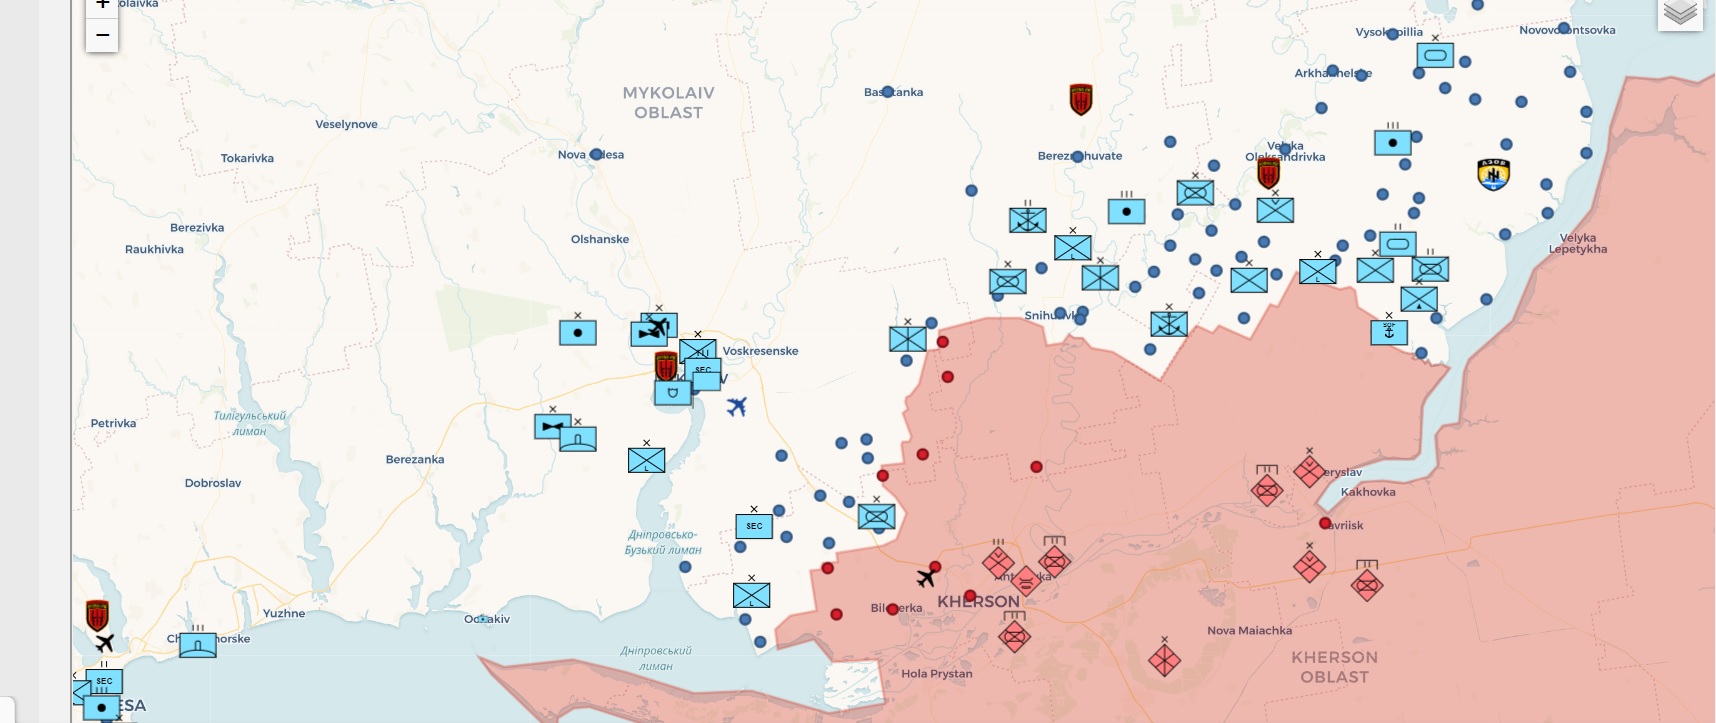 Kherson OSINT Map.jpg